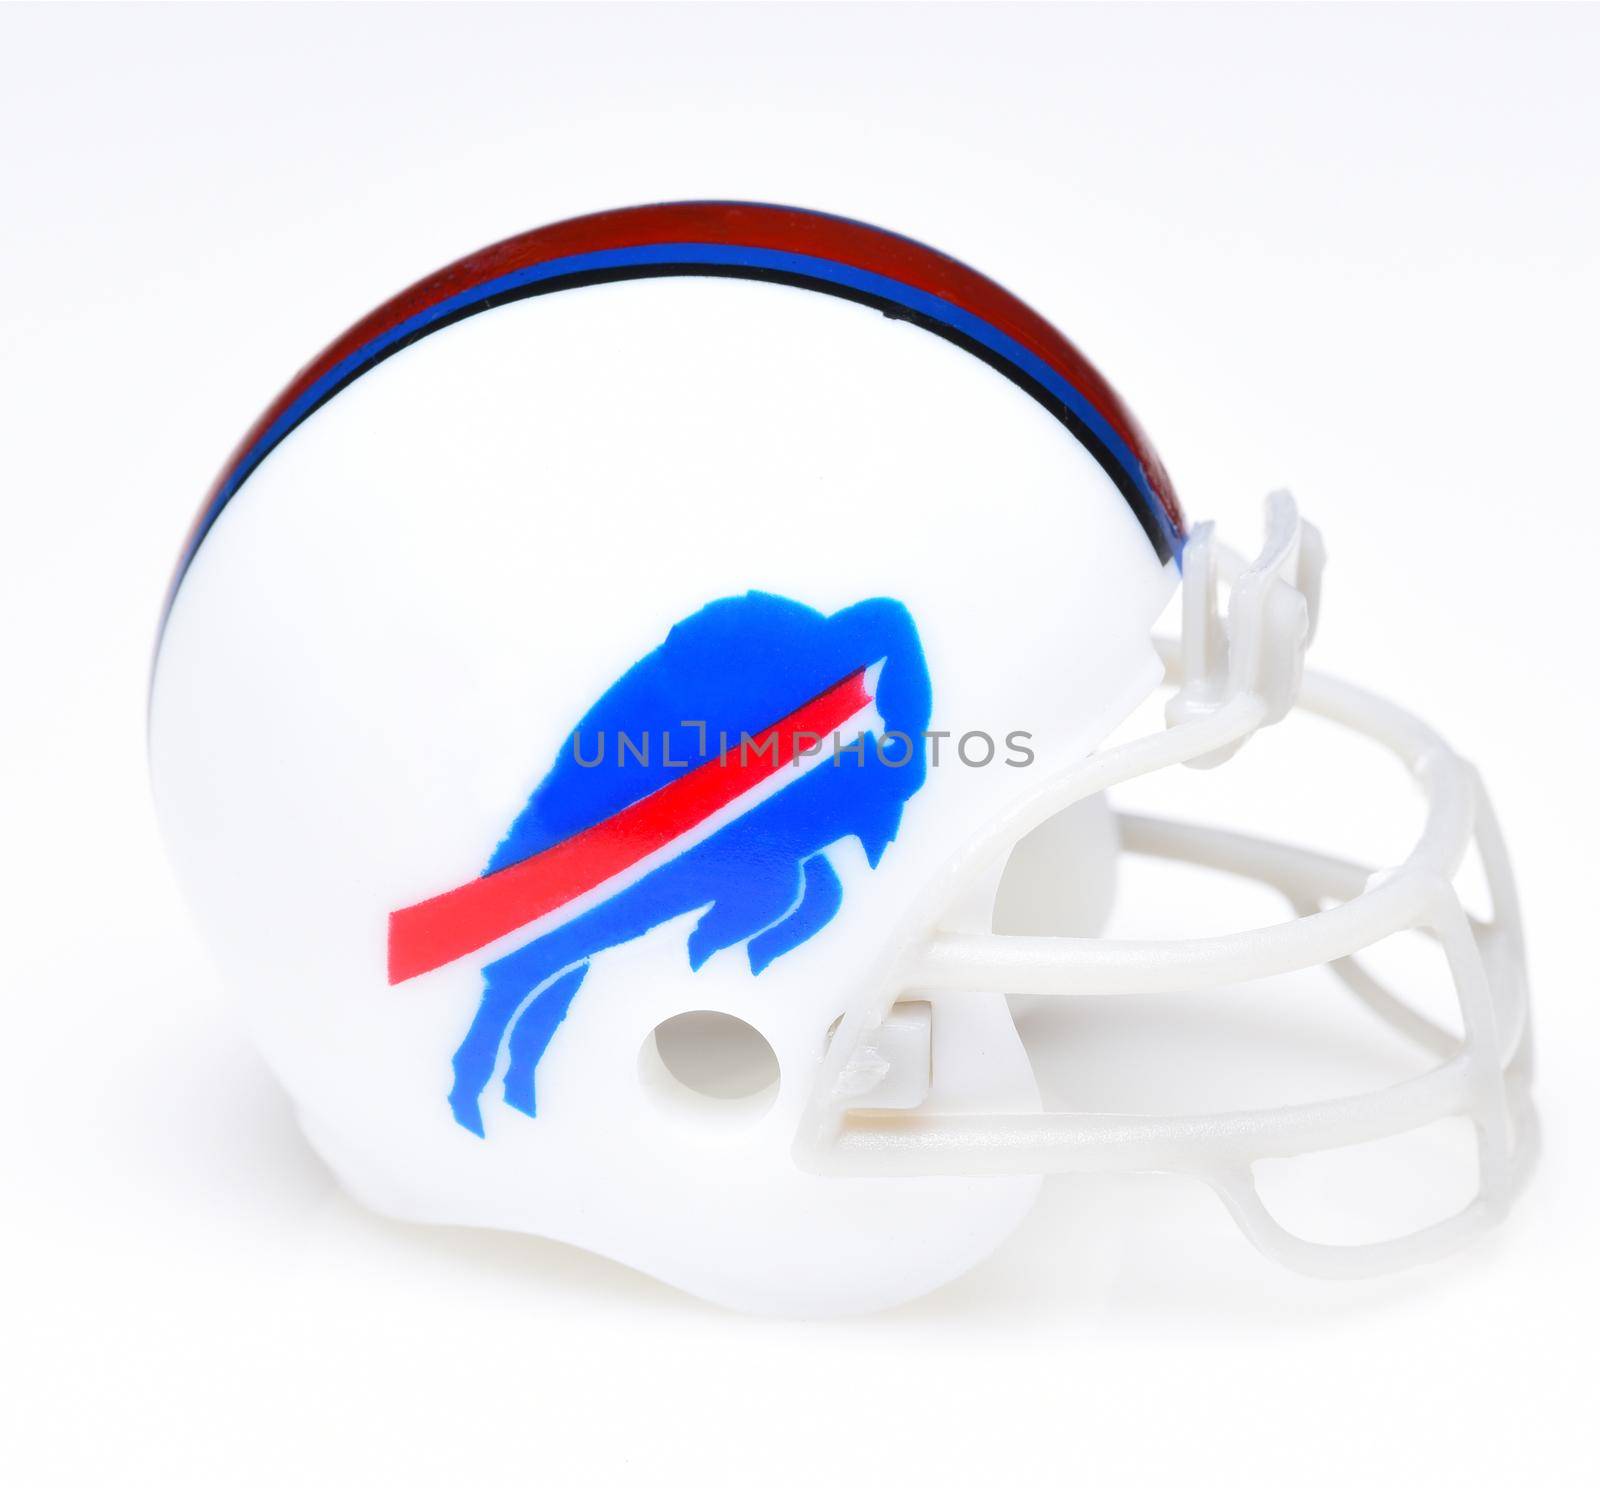 Football Helmet for the Buffalo Bills by sCukrov